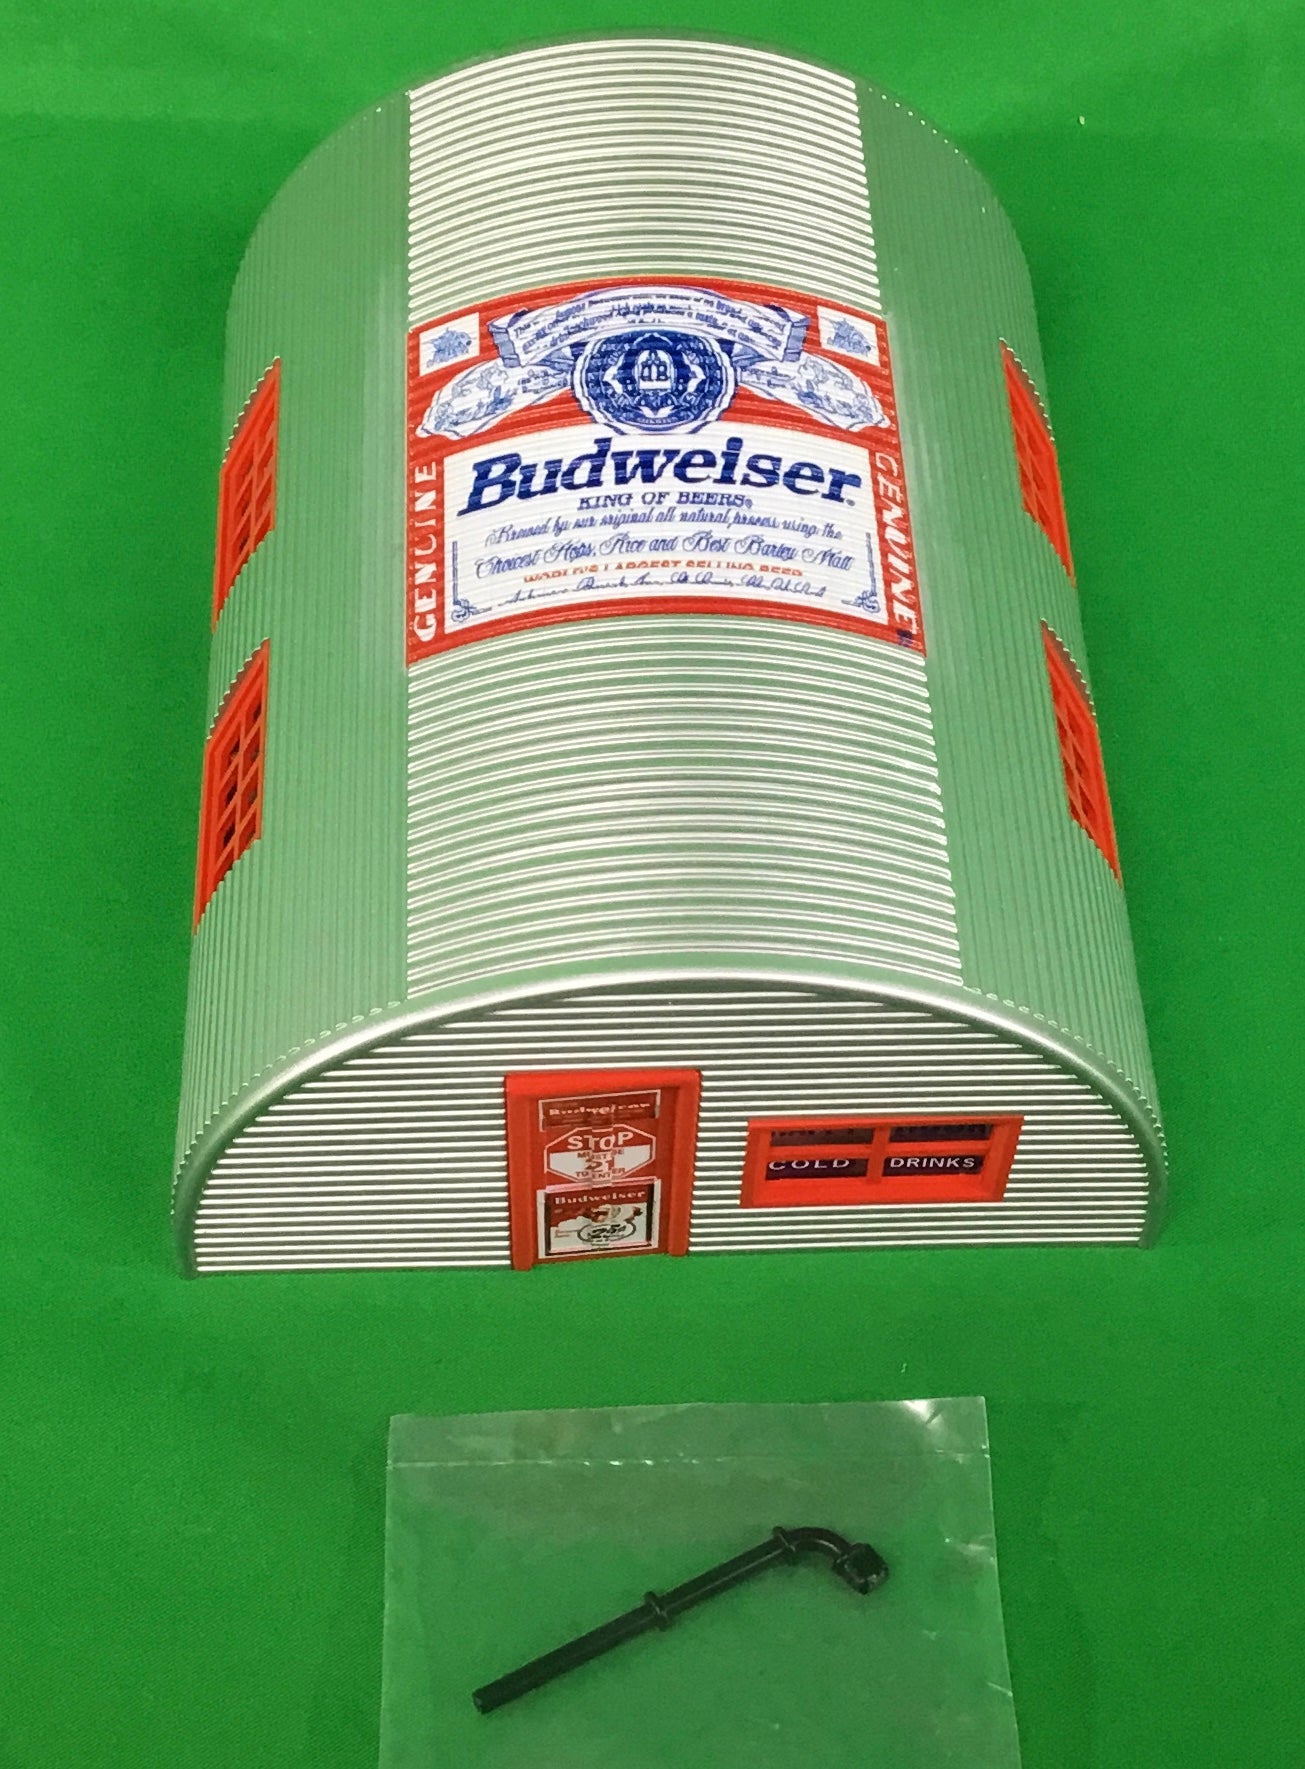 Lionel 2330110 - Anheuser-Busch - Budweiser Brew Hut